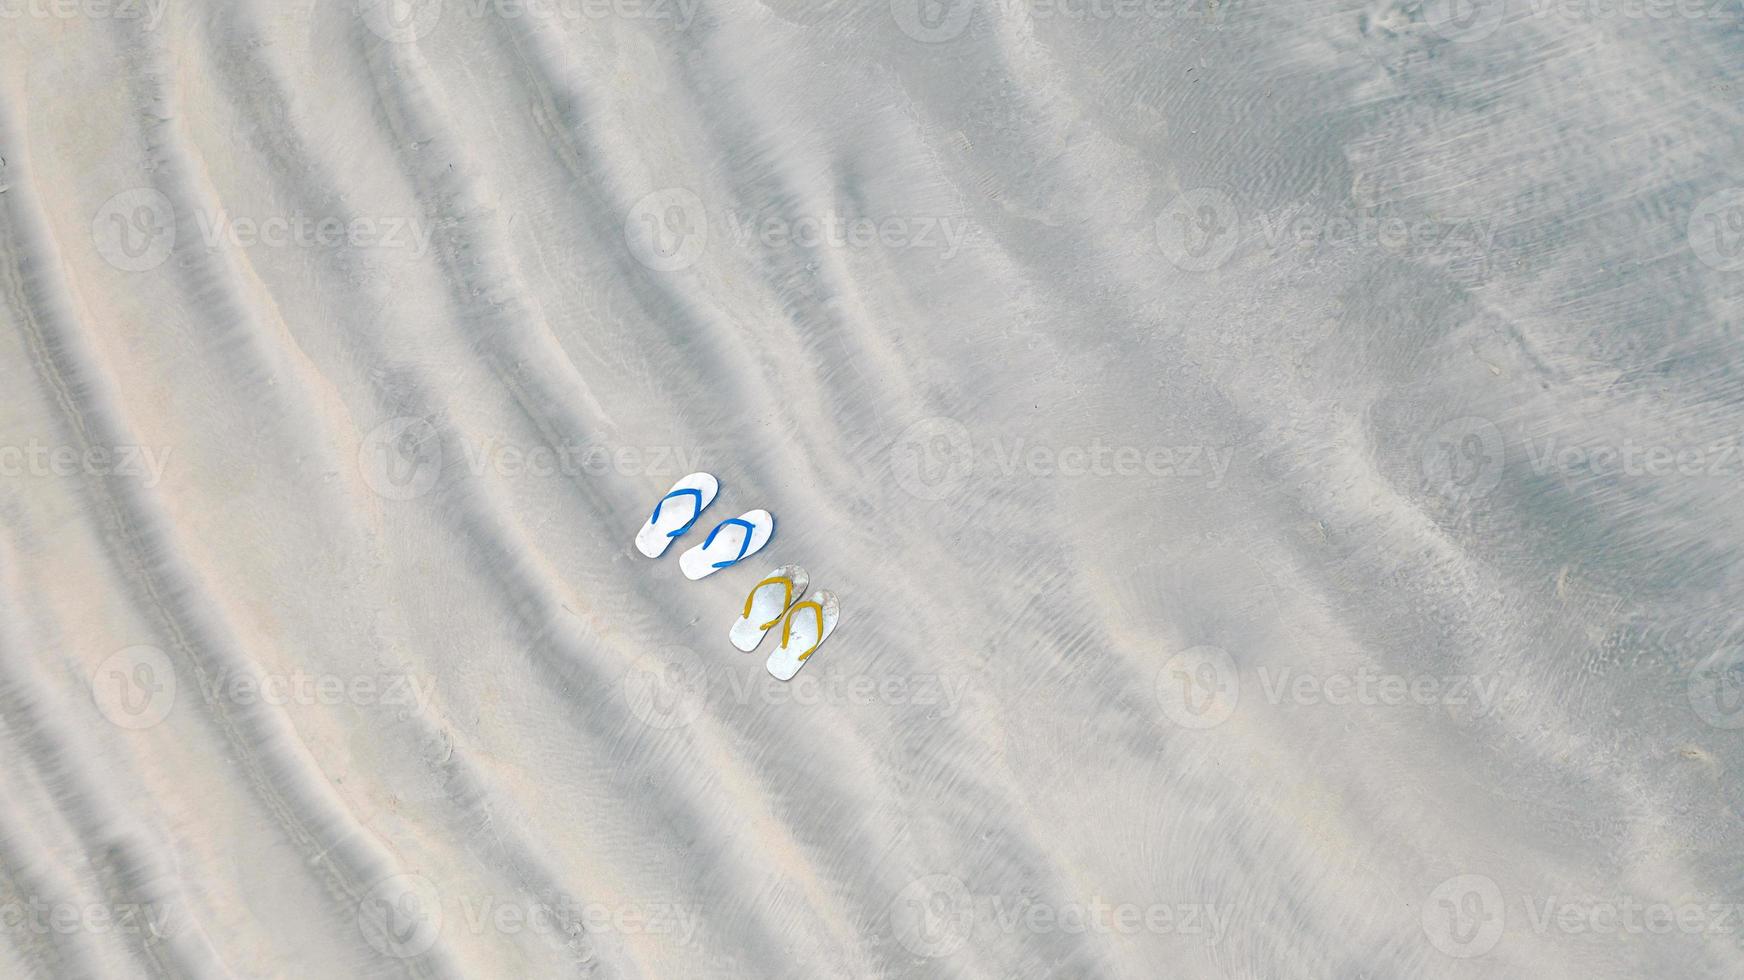 tongs sur la plage de sable, fond de vacances d'été, vue aérienne de dessus photo